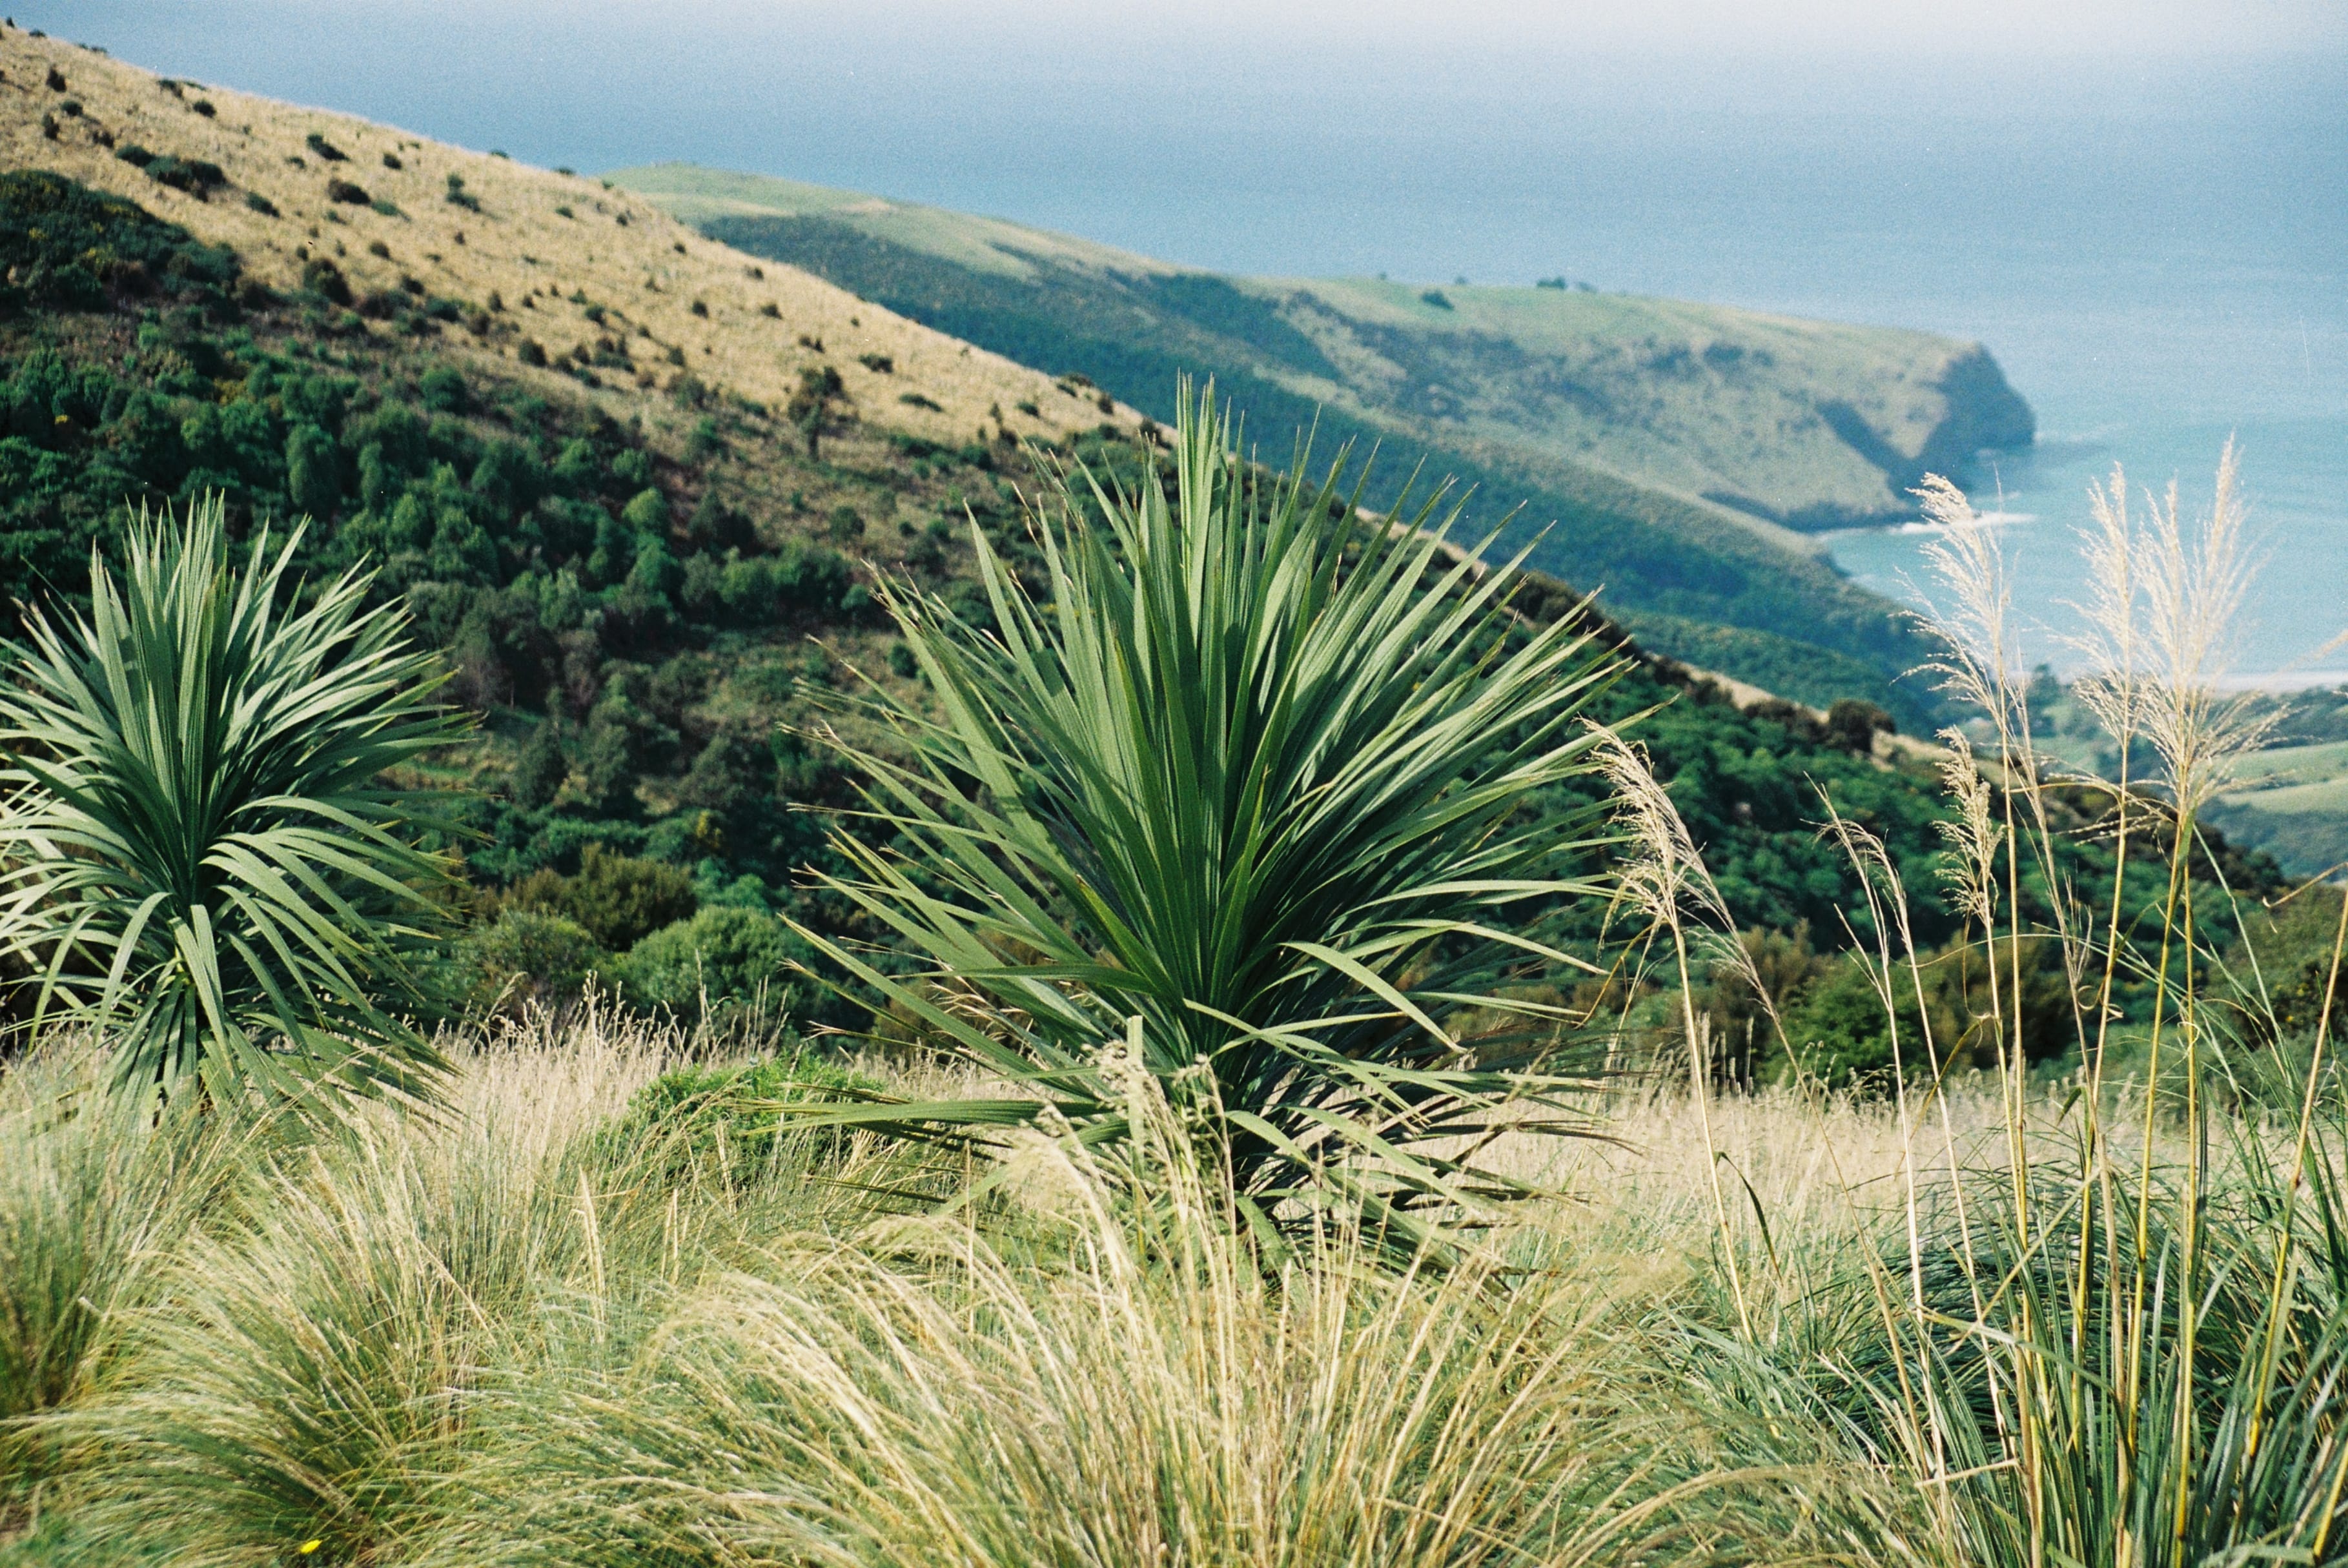 Desde entonces la organización ha ampliado enormemente la reserva mediante la compra de la estación Ōtānerito en 1991 y mediante varias adiciones posteriores. Desde 2016 la organización también ha cuidado de 192 hectáreas de la Reserva Purple Peak Curry, tras su compra ese mismo año por la New Zealand Native Forest Restoration Trust.